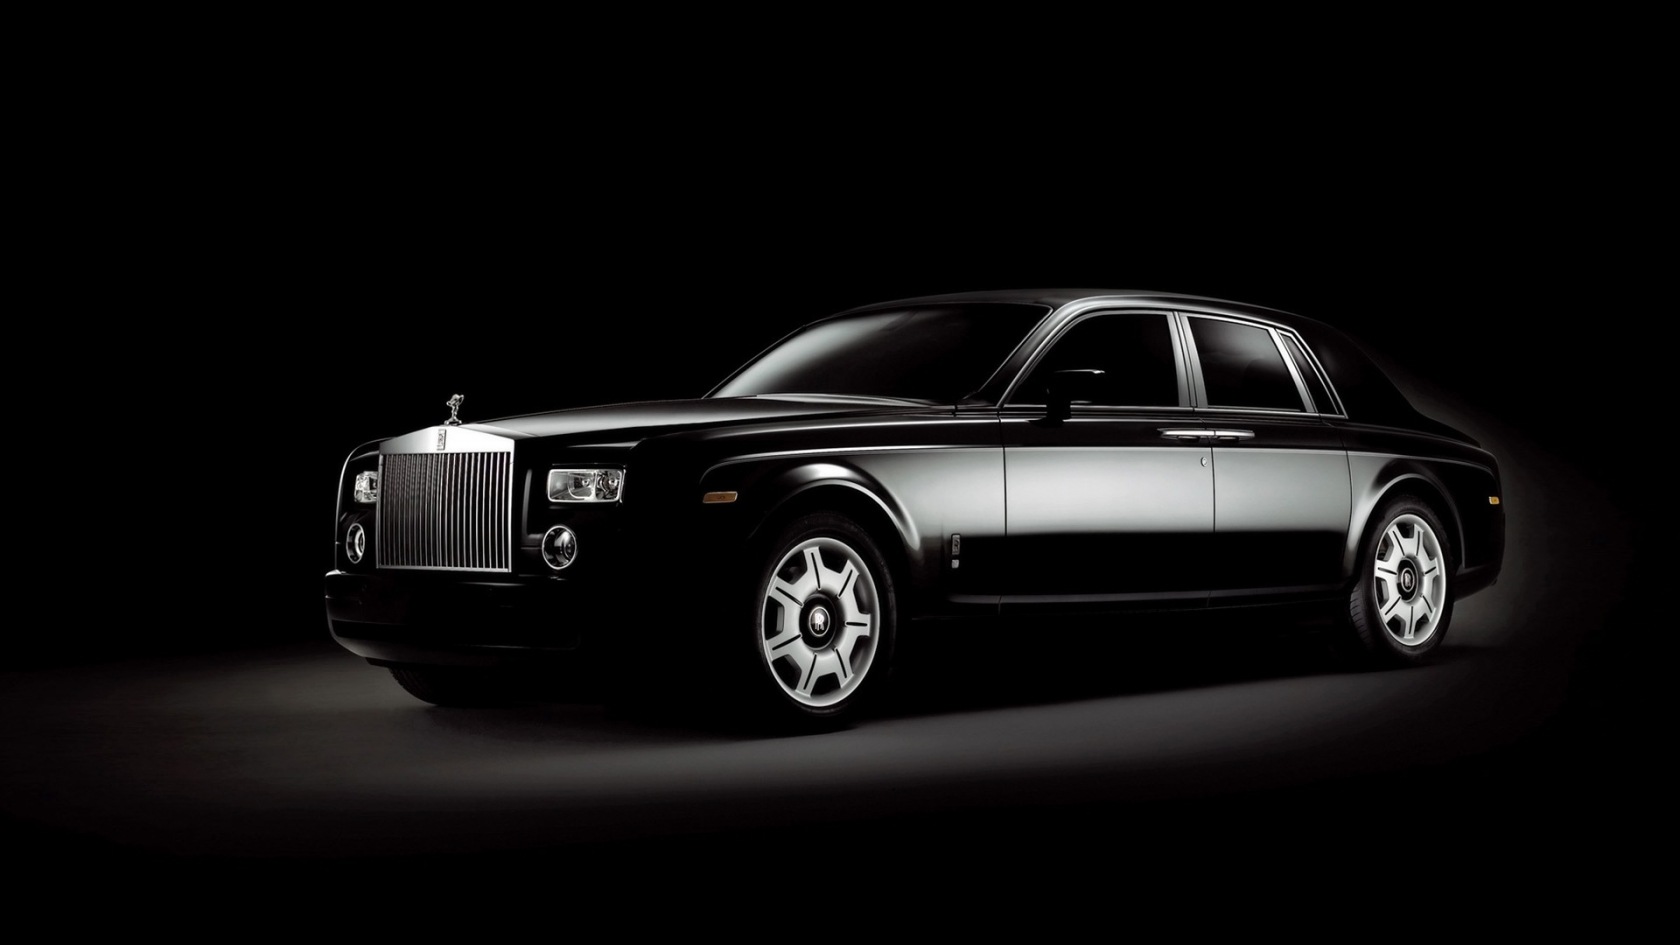 Rolls Royce Phantom Black for 1680 x 945 HDTV resolution